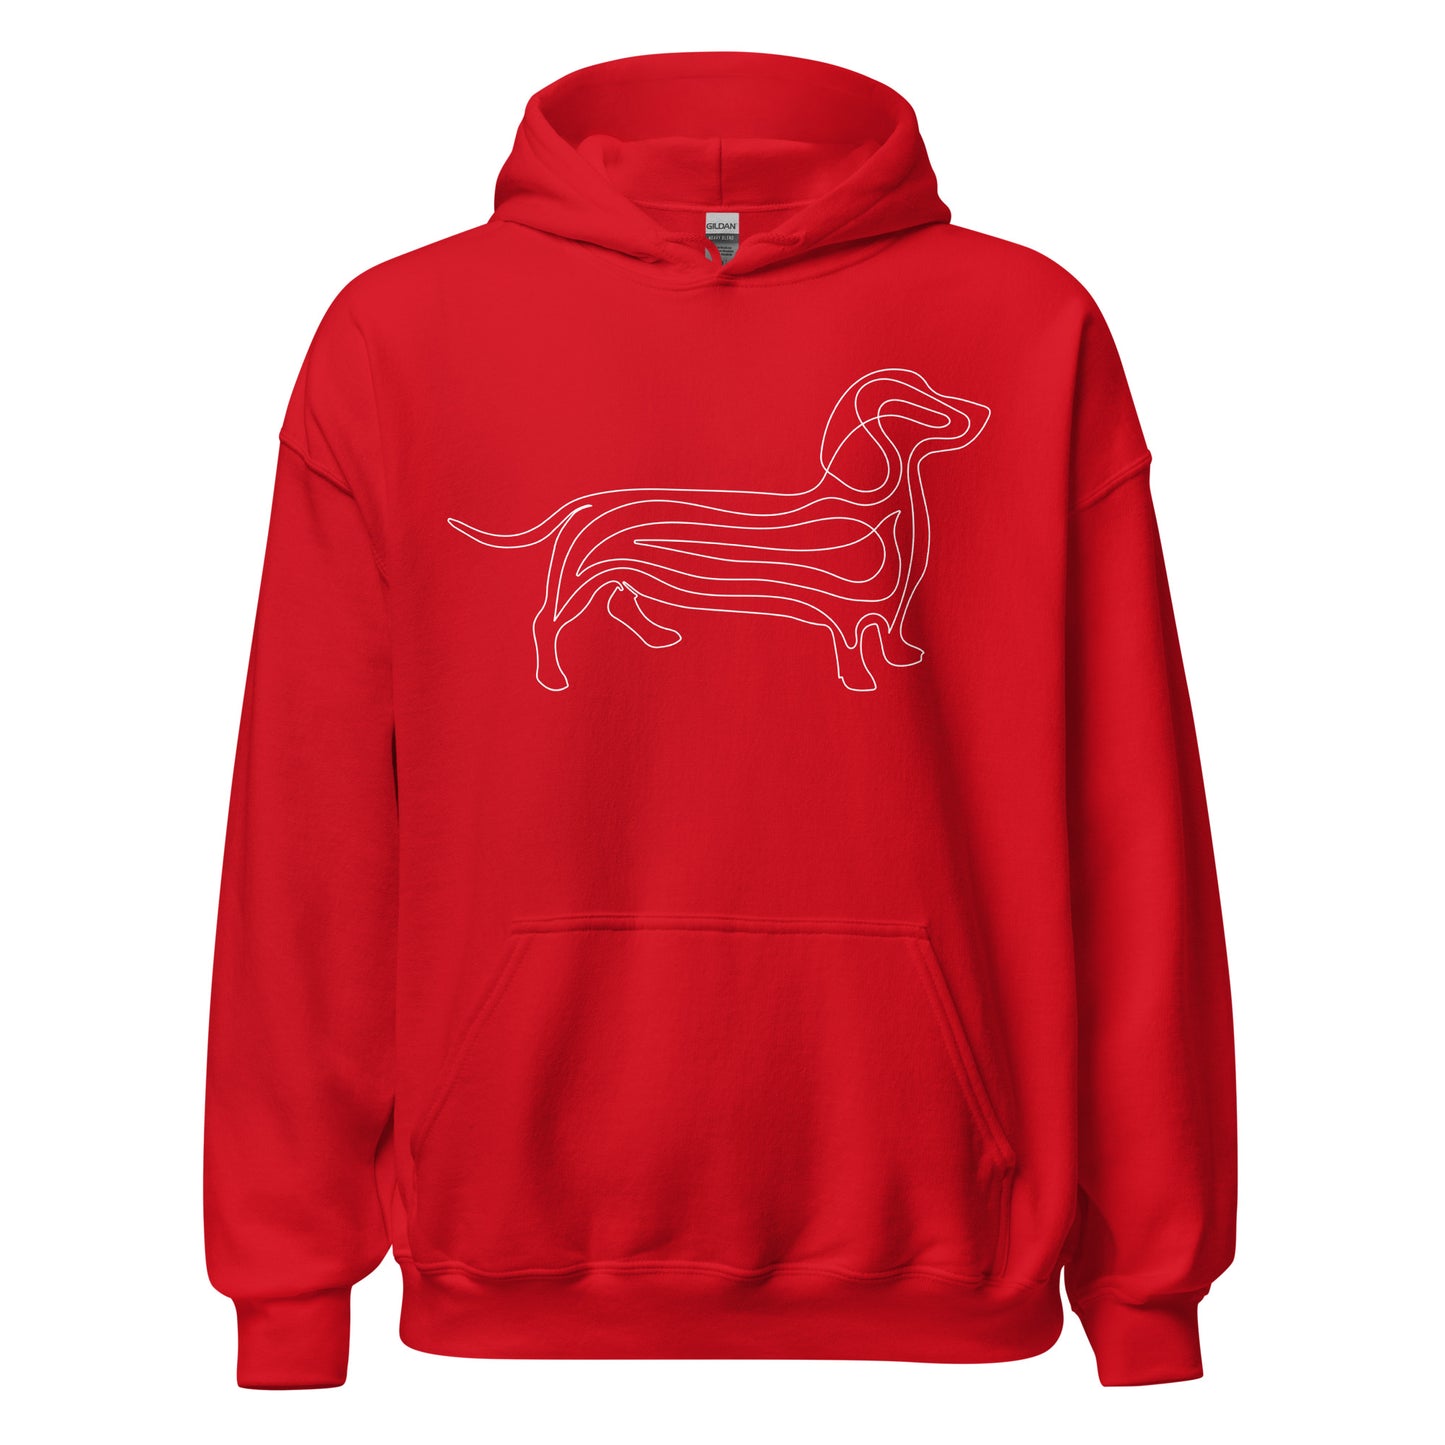 White line Dachshund on unisex red hoodie